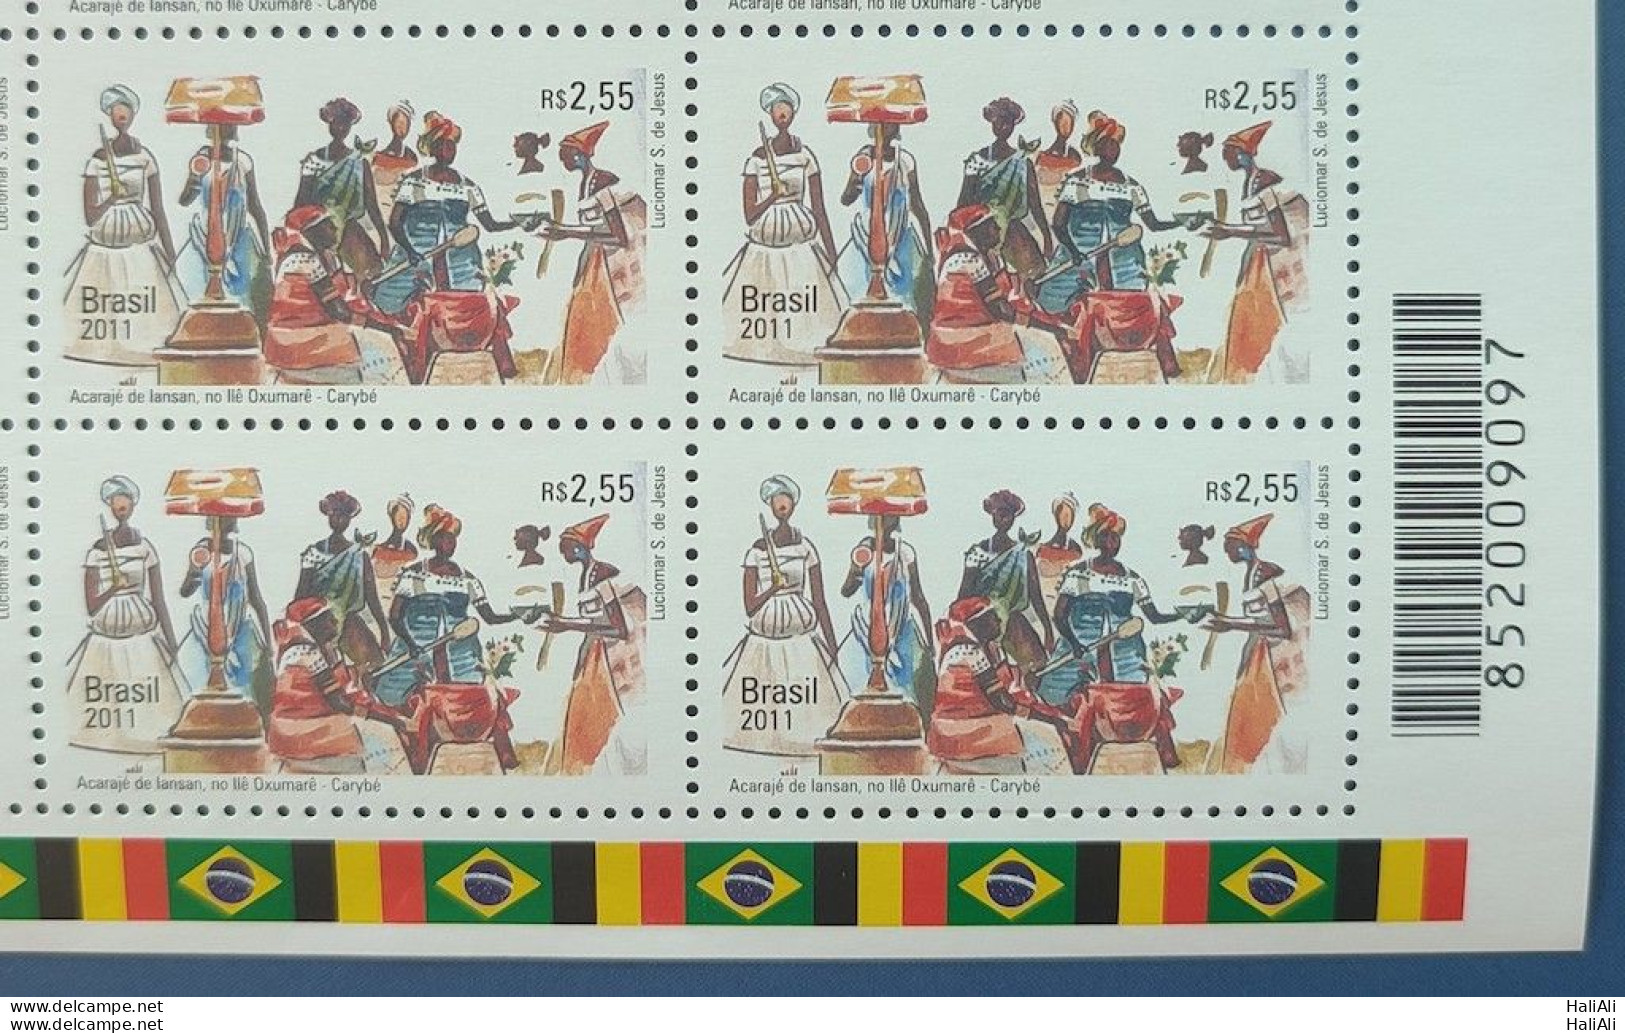 C 3151 Brazil Stamp Diplomatic Relations Belgium Acaraje Arte Flag 2011 Block Of 4 Bar Code - Unused Stamps